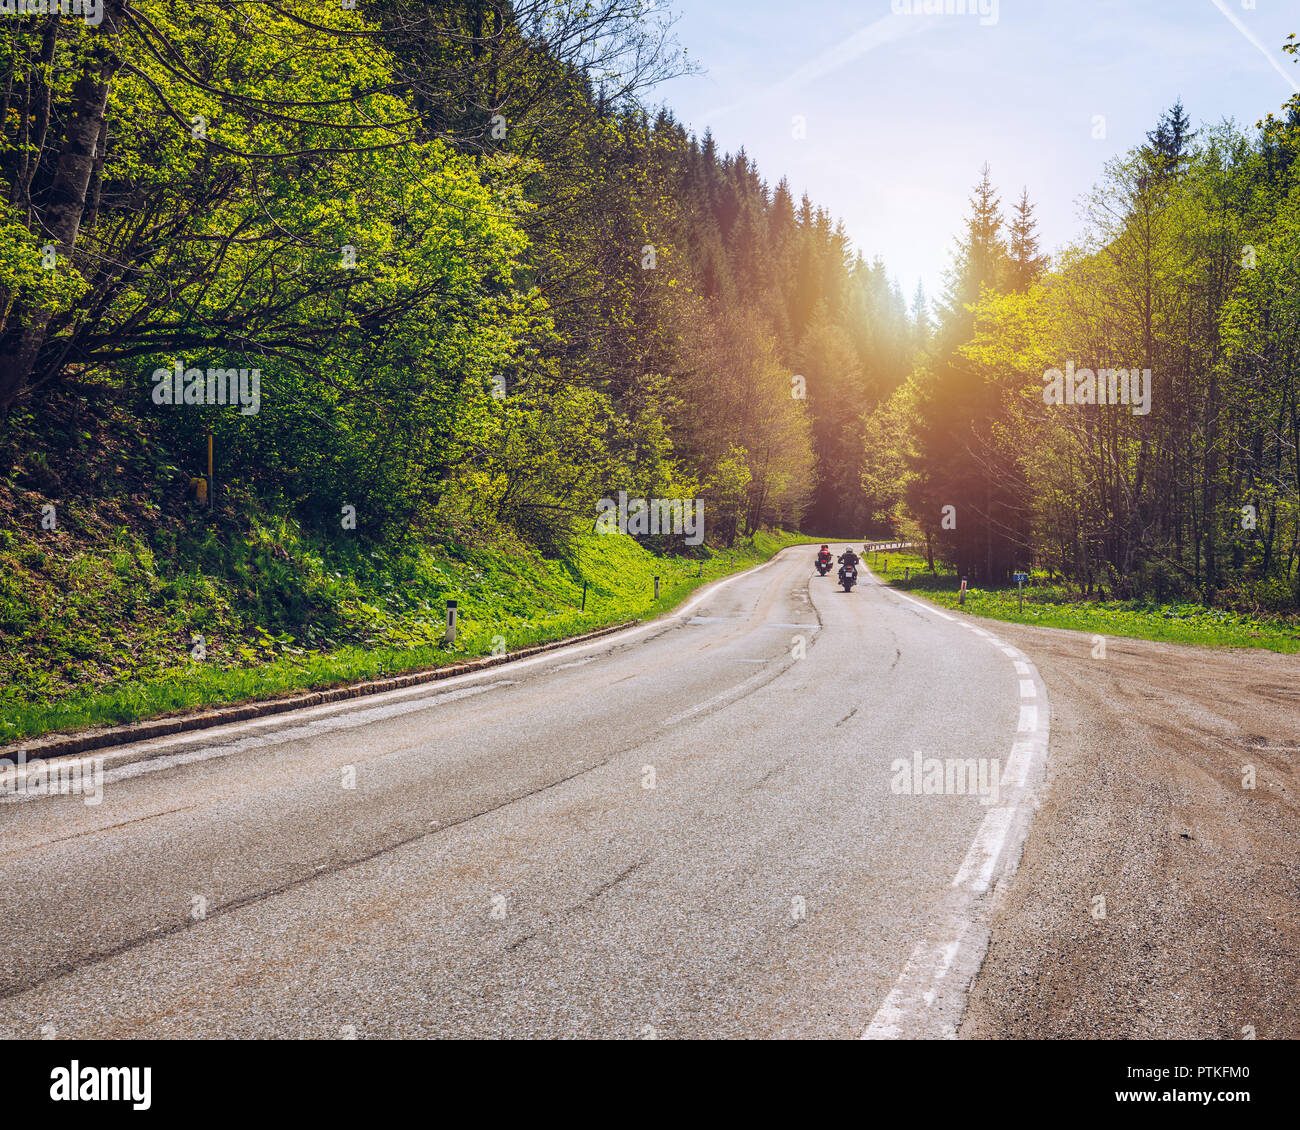 Les cyclistes sur route montagneuse, biker sur la route dans la lumière au coucher du soleil sur la route courbe équitation passage à travers les montagnes alpines, extreme lifestyle, liberté concept Banque D'Images